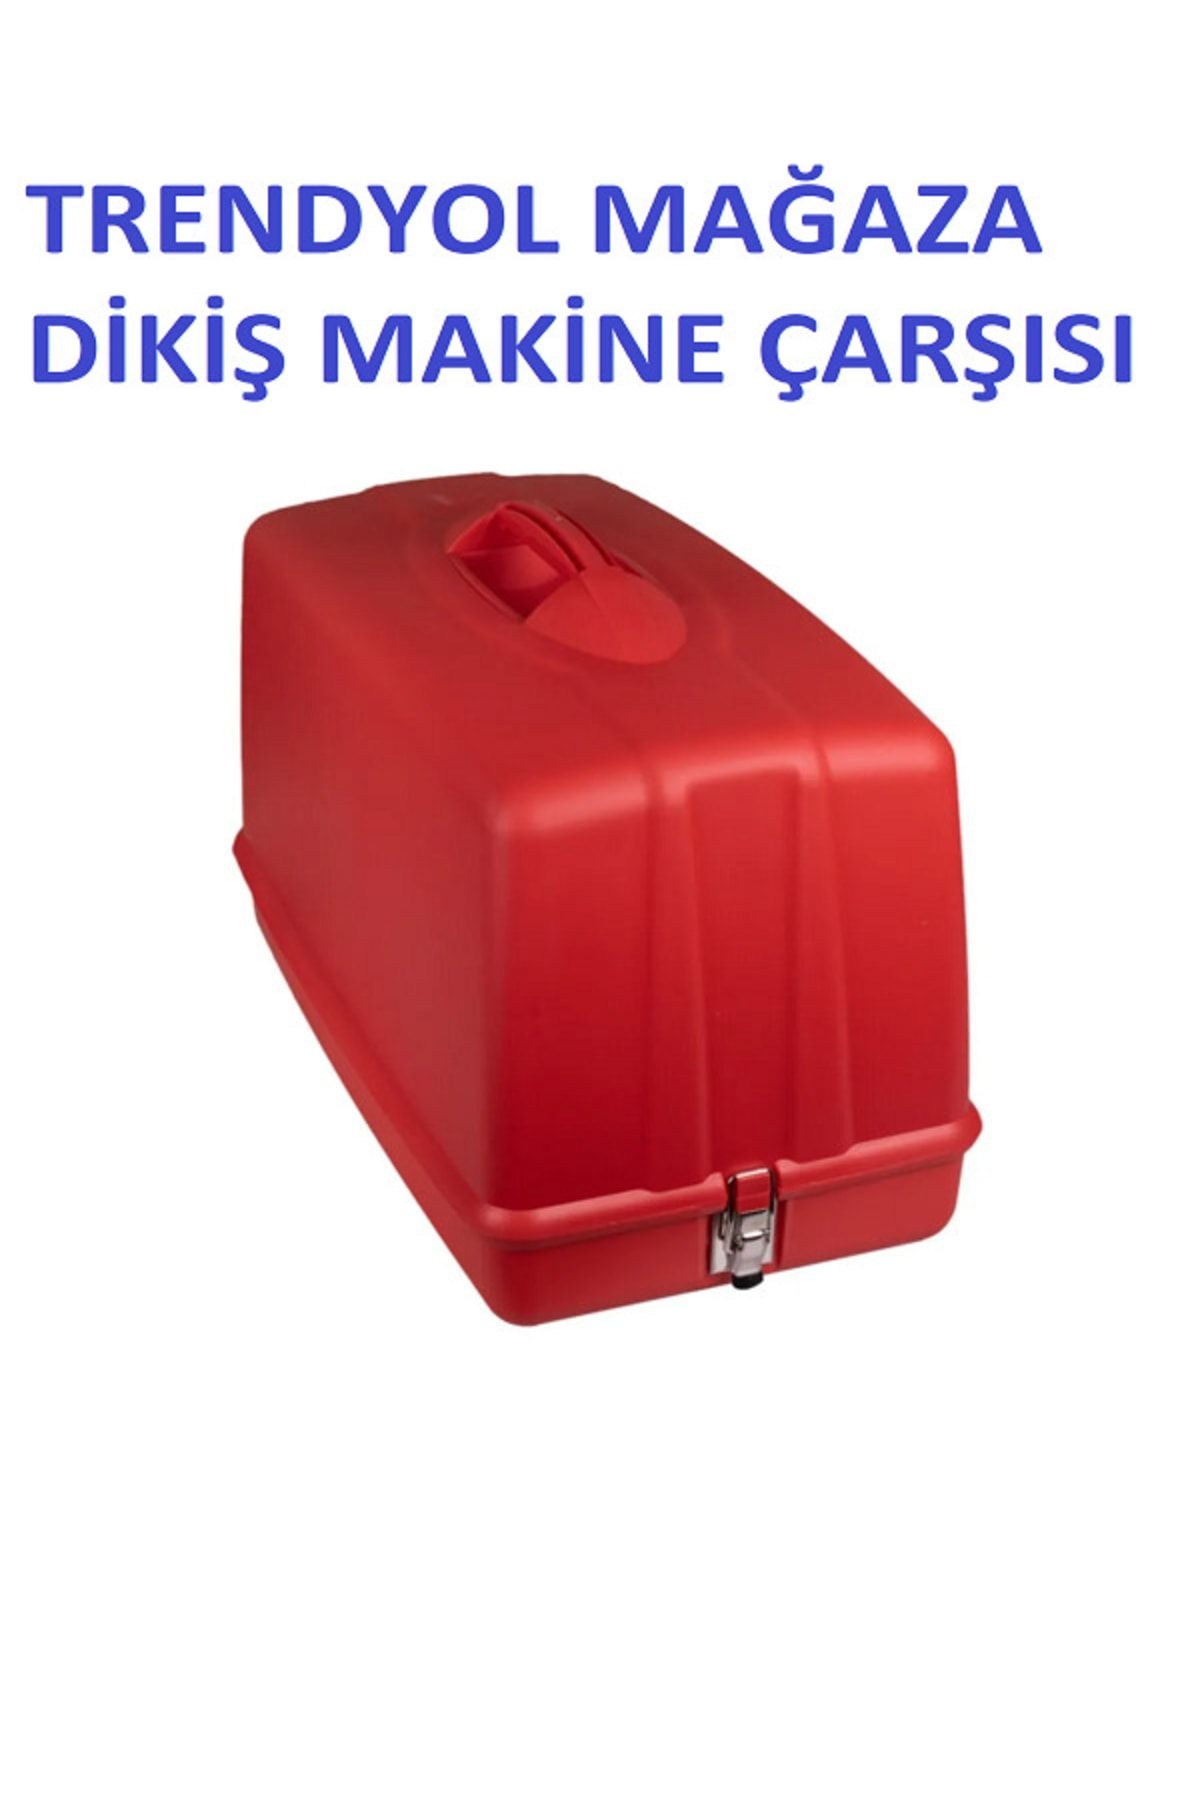 SINGER Dikiş Makine Çarşısı Yeni Tip Dikiş Makinelerine Uygun Taşıma Kabı Ve Koruma Çantası (kırmızı Renk)